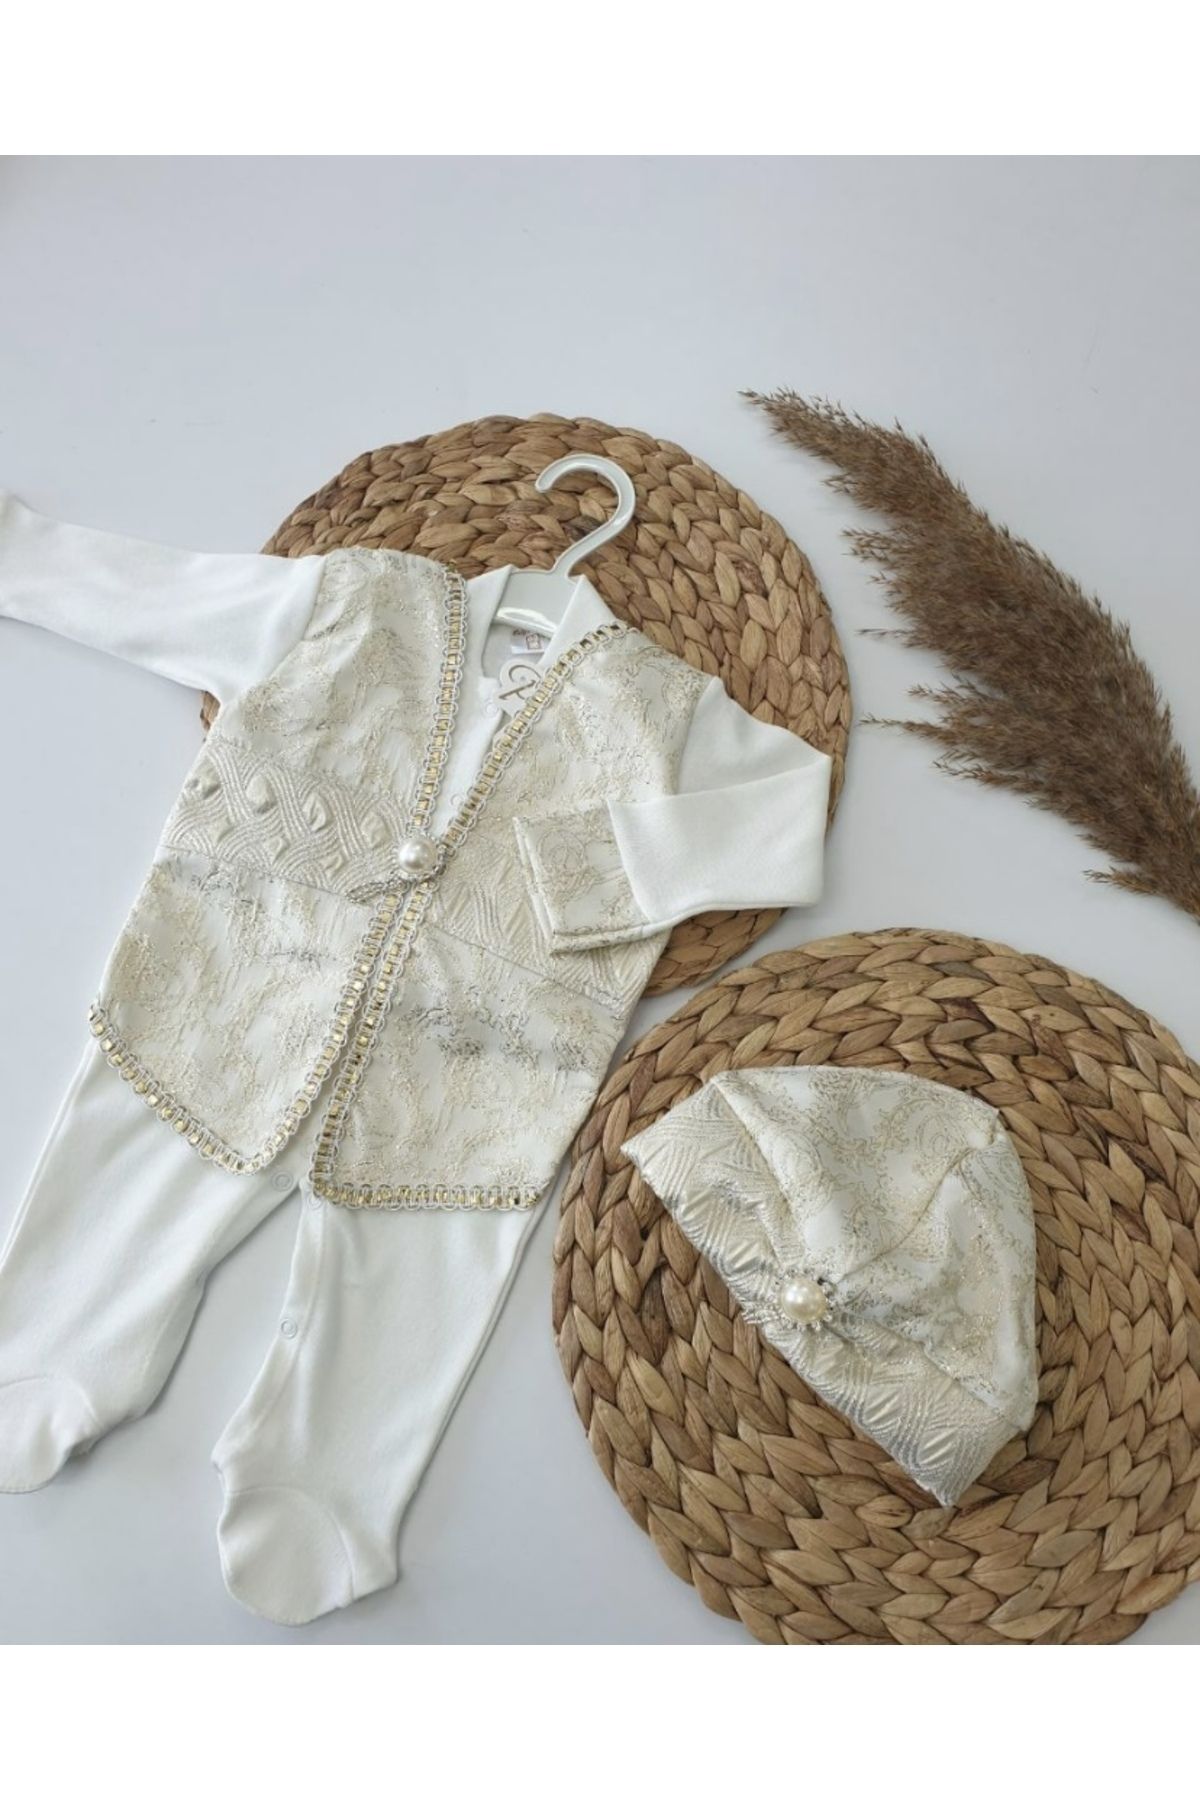 Cherub Baby Tuğralı Şehzade Tulum Erkek Bebek Mevlüt Takımı Sünnet Kıyafeti Bebek Hediyelik